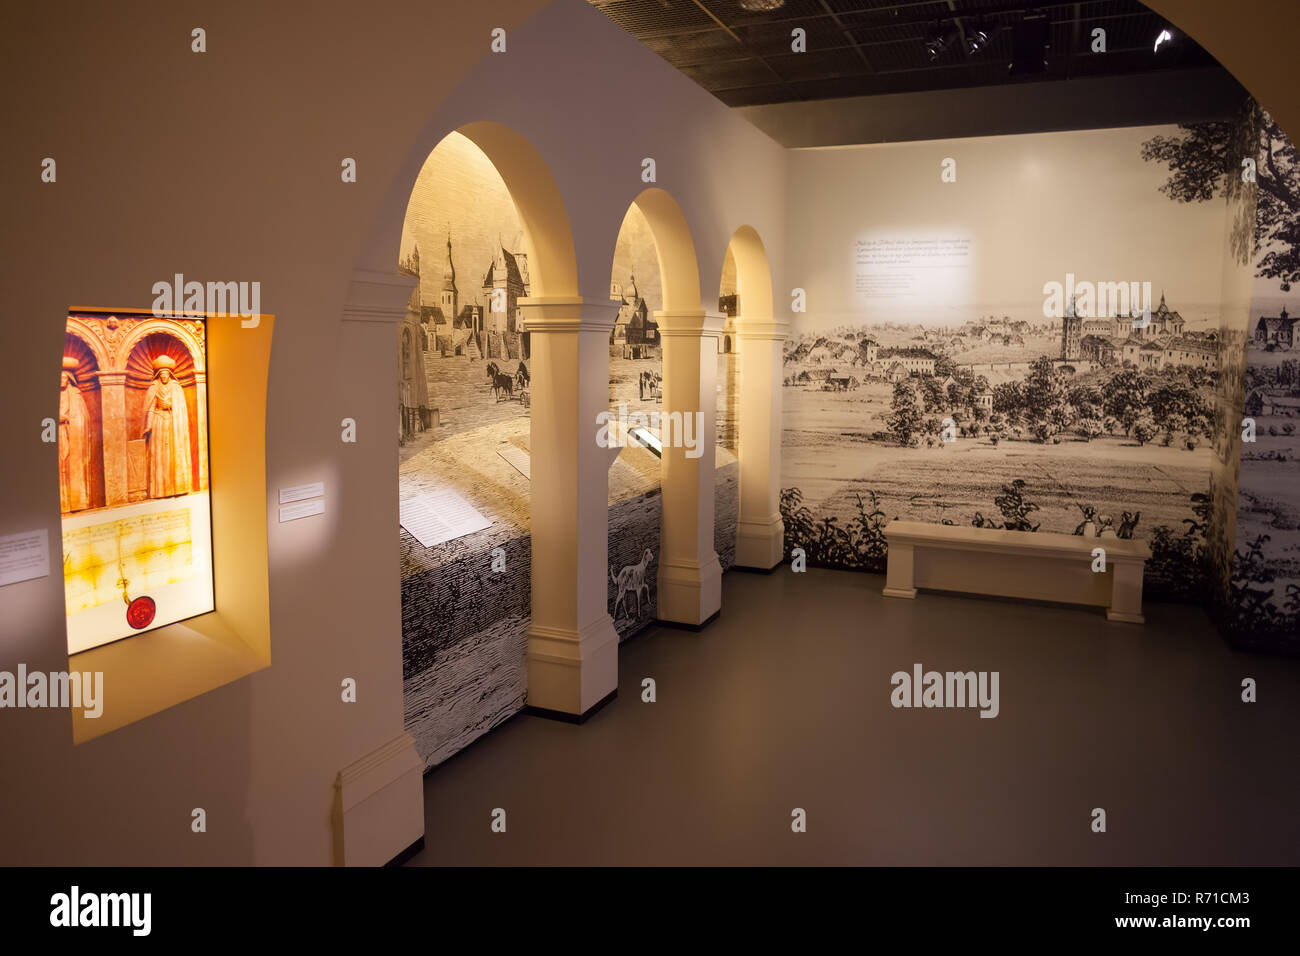 Polonia, Varsovia, POLIN Museo de Historia de judíos polacos exposición interior Foto de stock